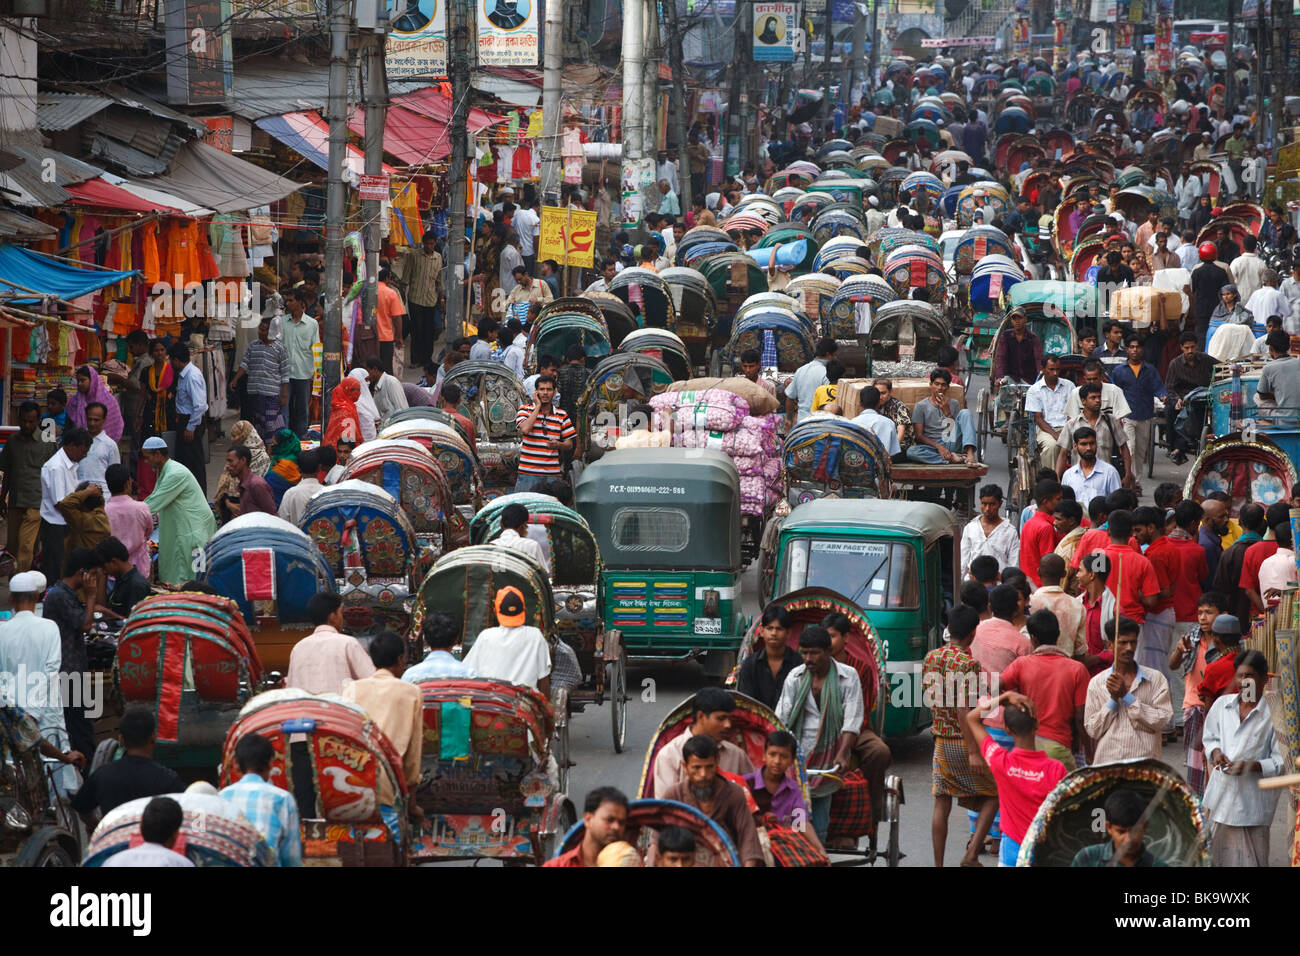 Personnes et trafic de pousse-pousse dans la vieille ville de Dhaka, Bangladesh. Banque D'Images